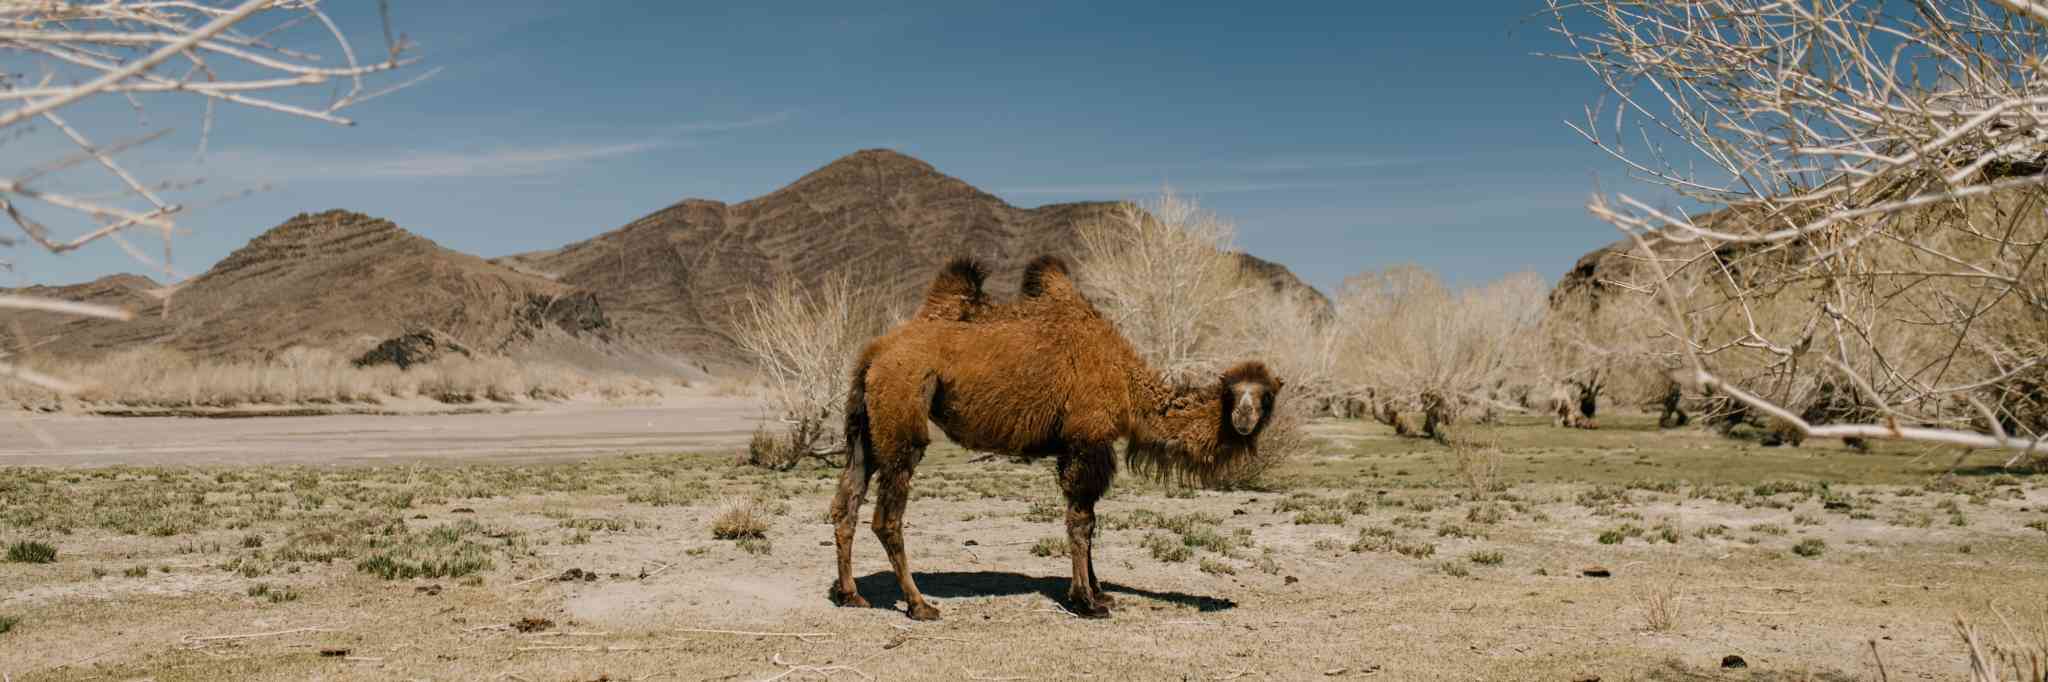 新疆哈萨克族牧民的骆驼生意经